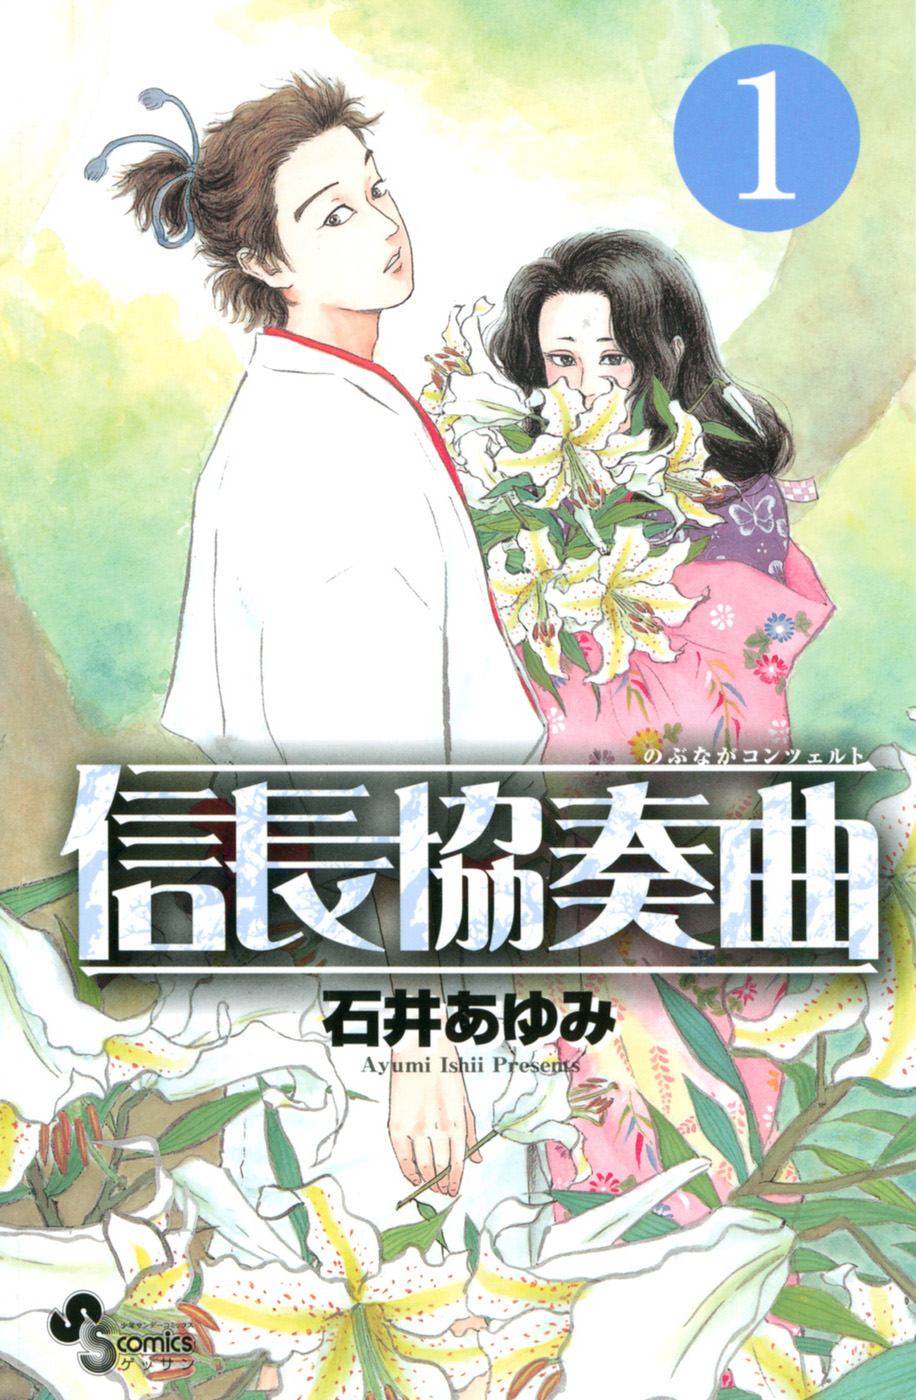 Download Free Raw Manga Nobunaga Kyousoukyoku 信長協奏曲 Update Volume 13 At Rawcl